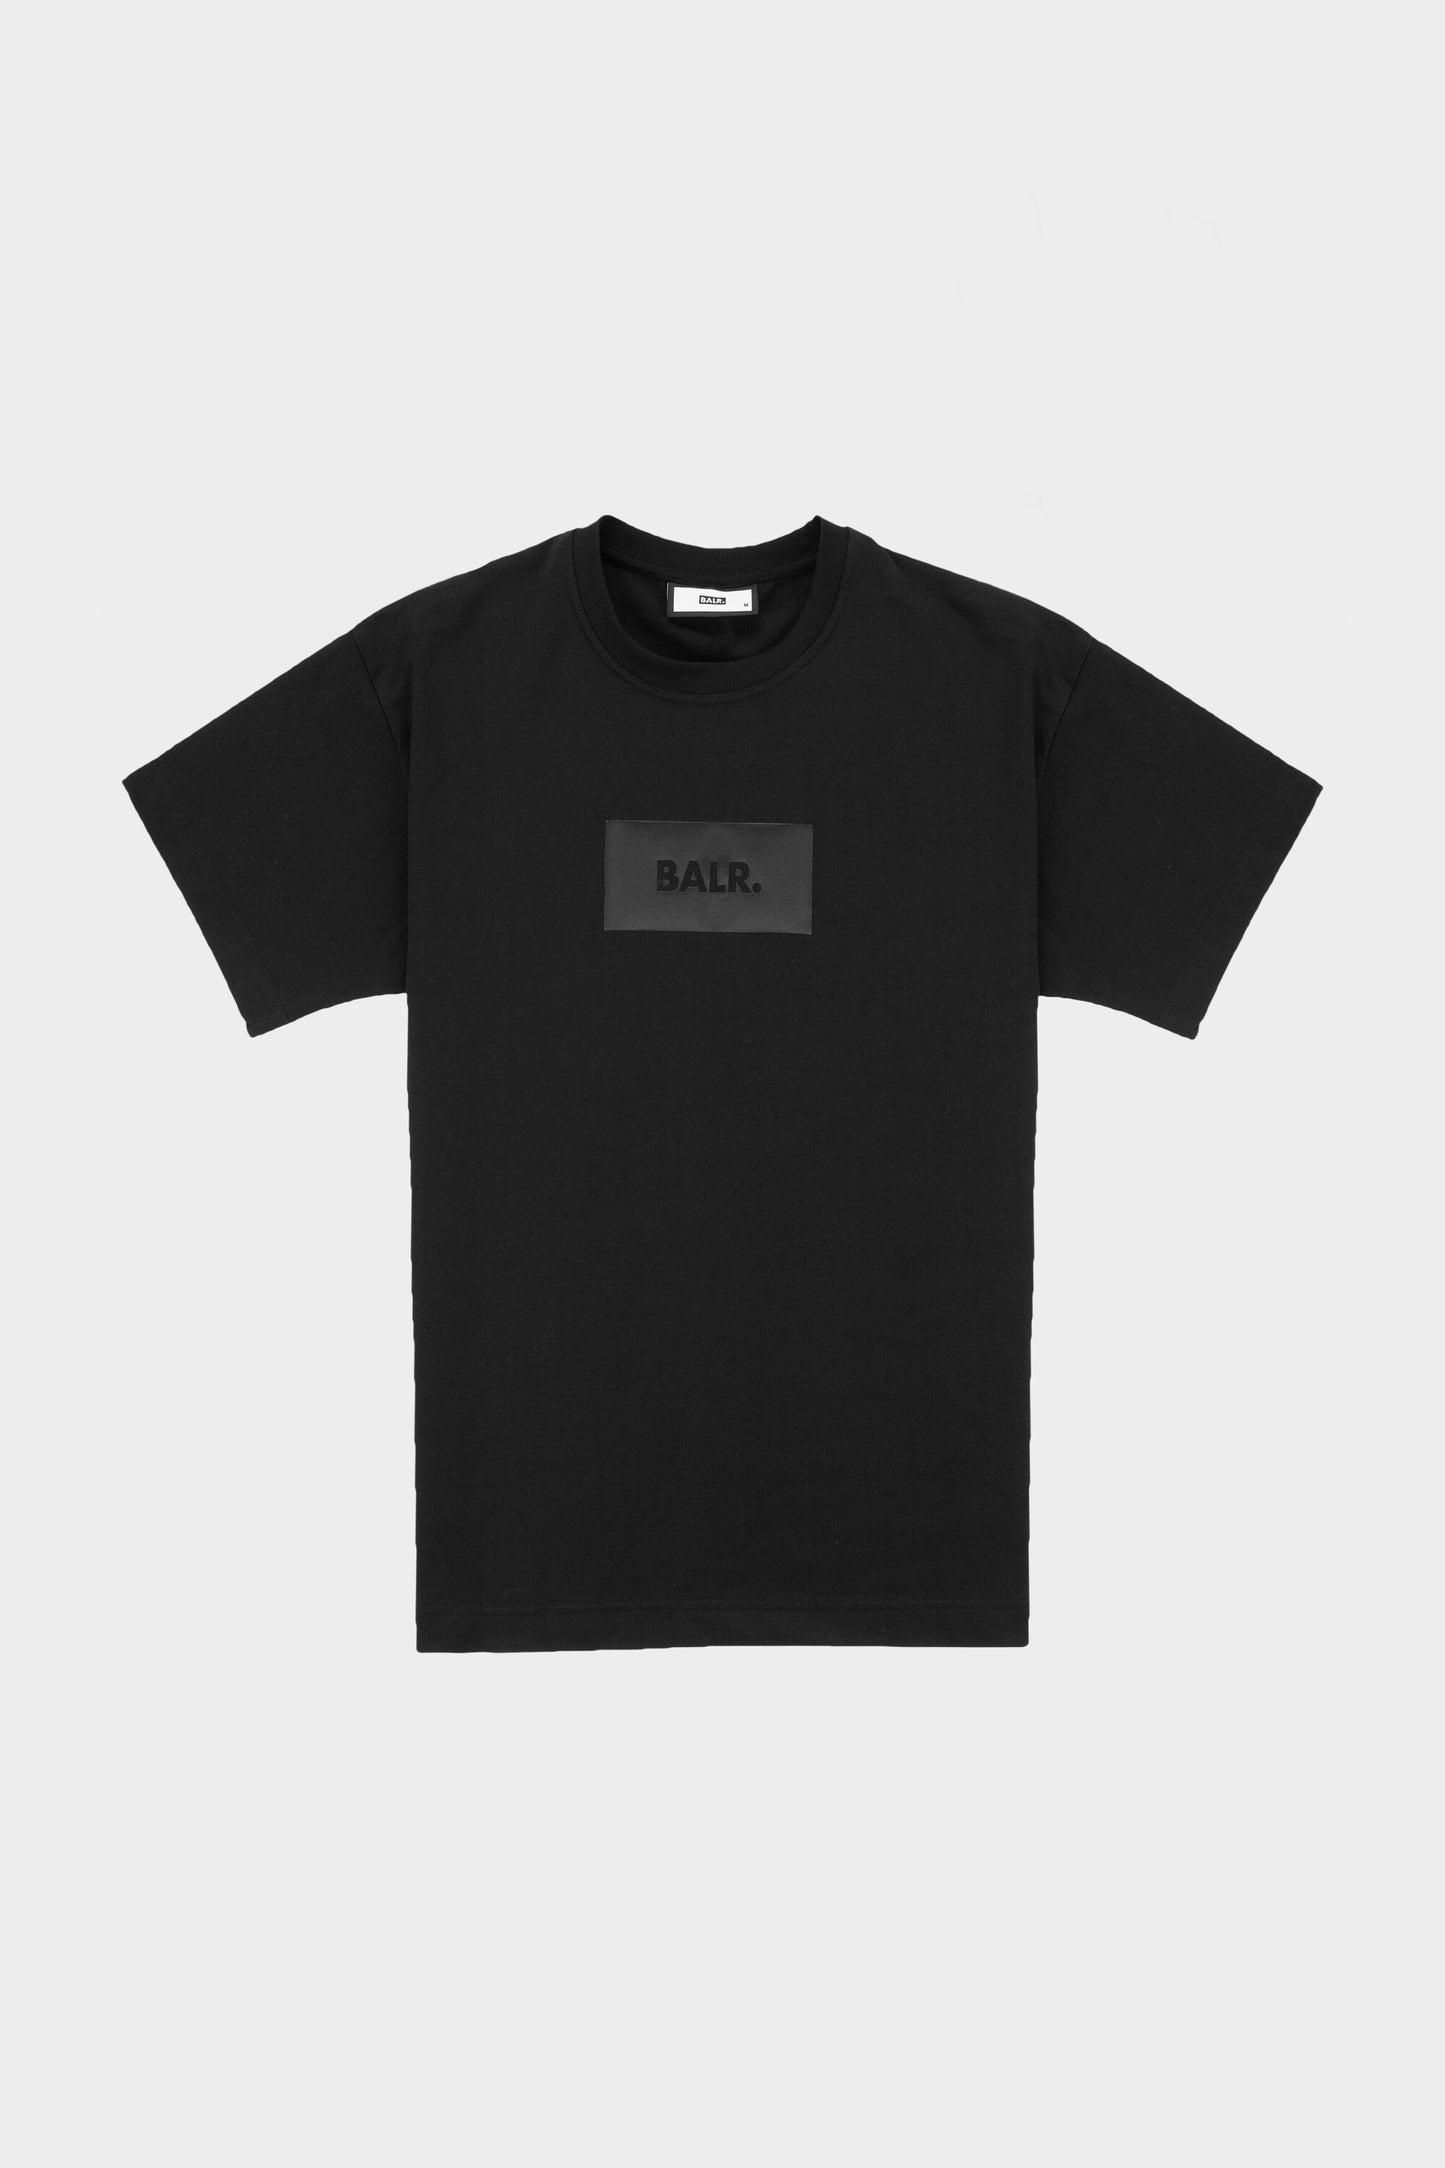 Satin Print Oversized Fit T-Shirt Jet Black